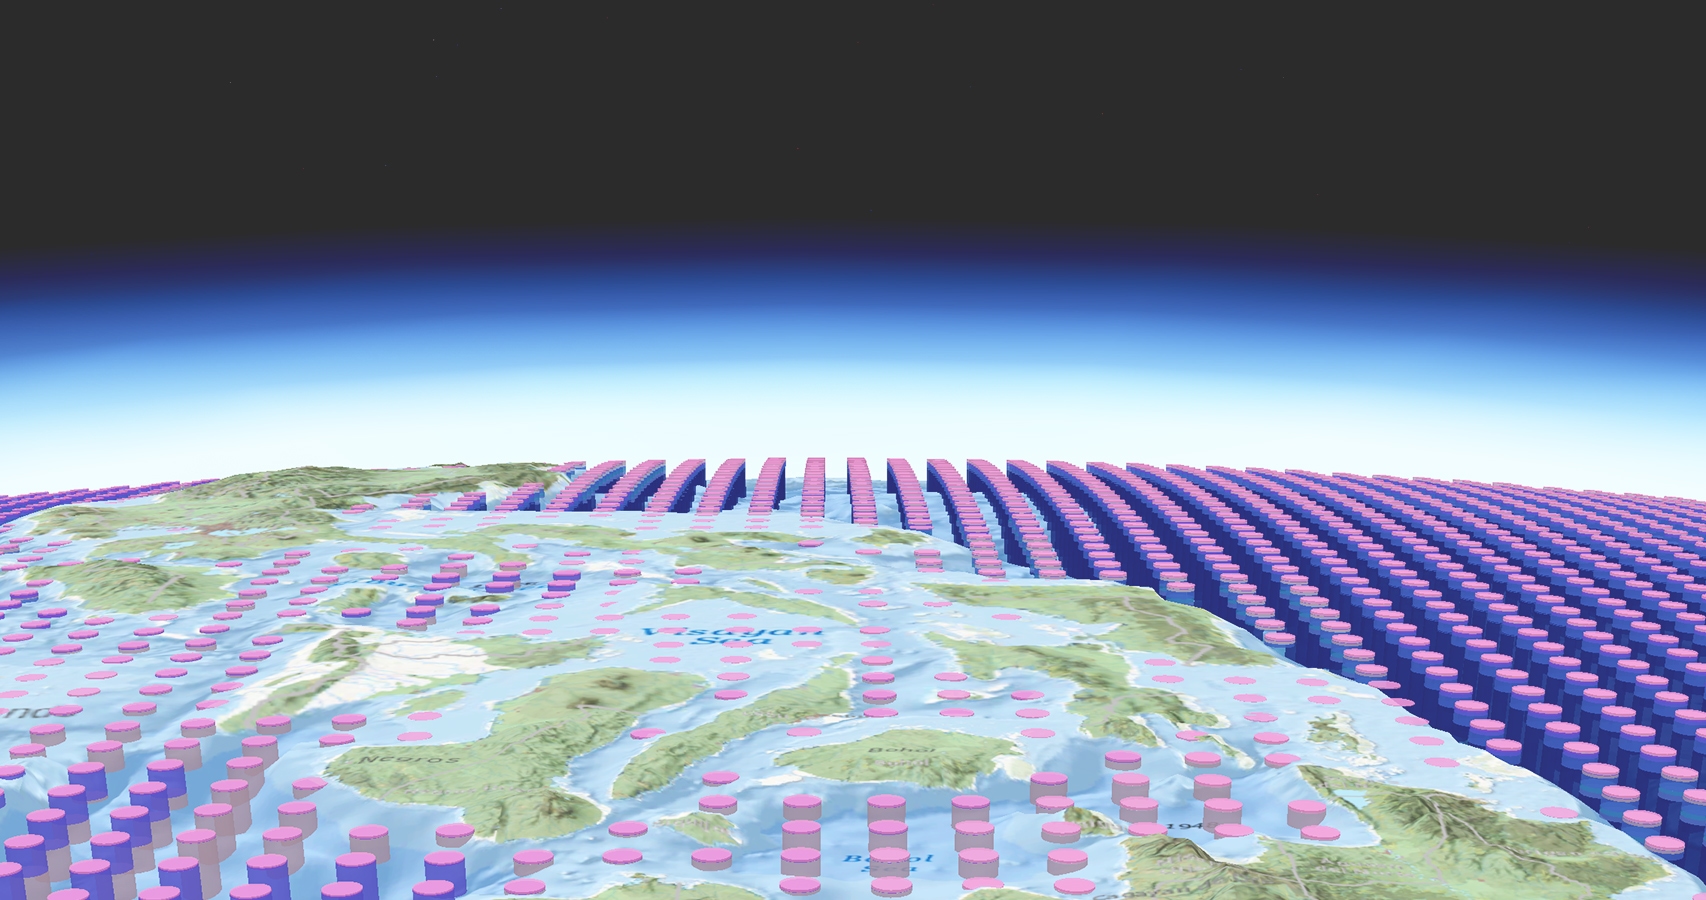 رسم يتضمن صفوفًا من الأسطوانات الوردية والأرجوانية مثبتة في صفوف منسقة تعلوها خريطة كونتورية منمطة للأرض